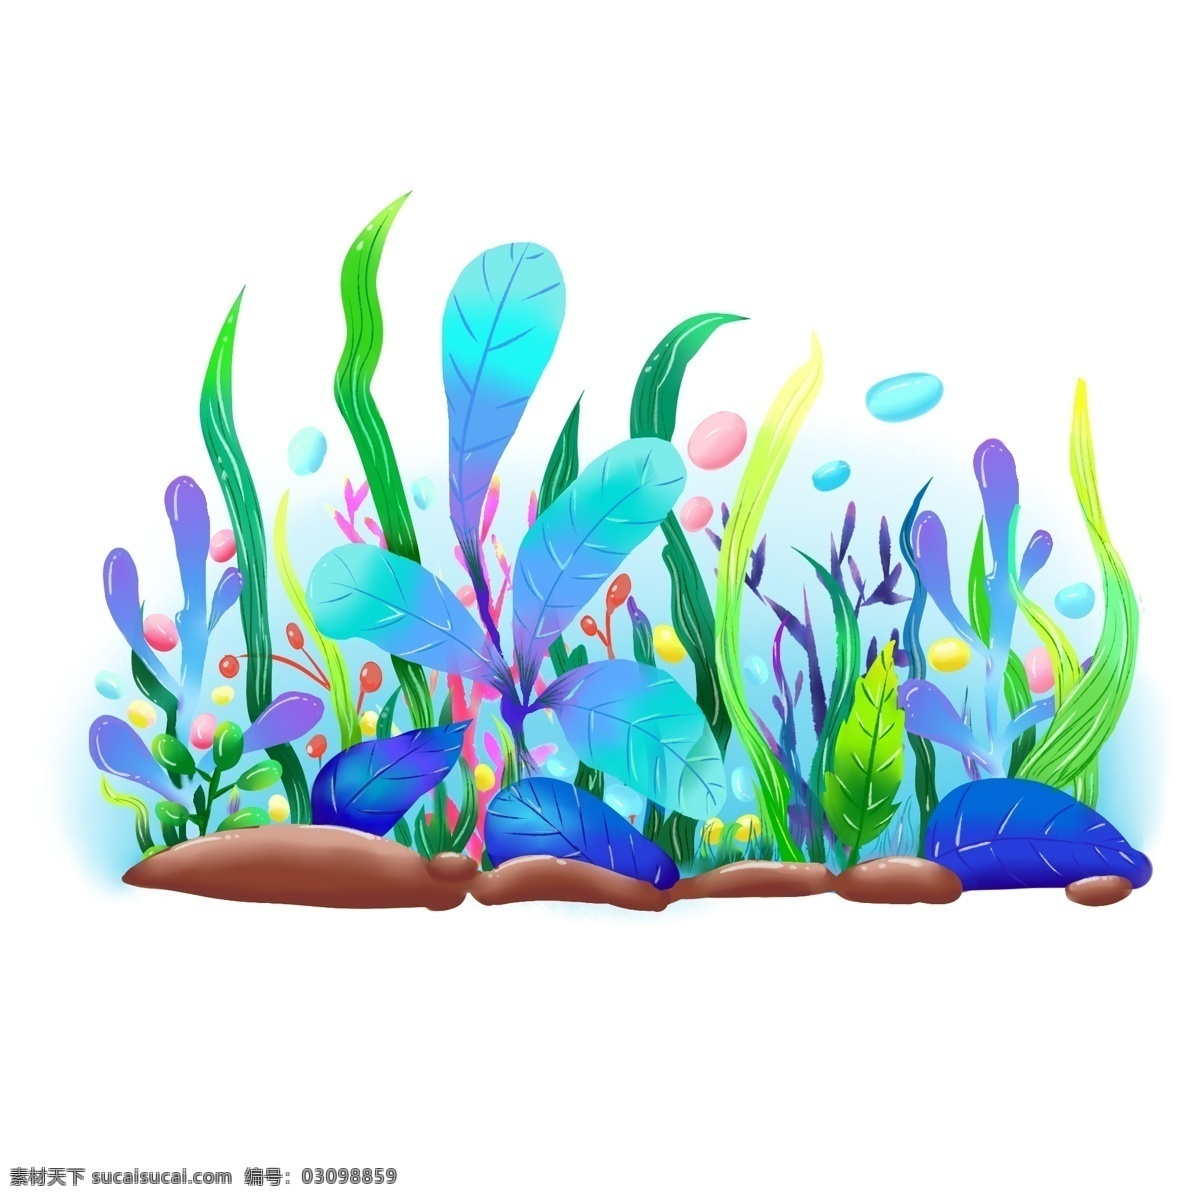 海底 世界 小 植物 海底植物 海草 叶子 树 多种颜色 石头